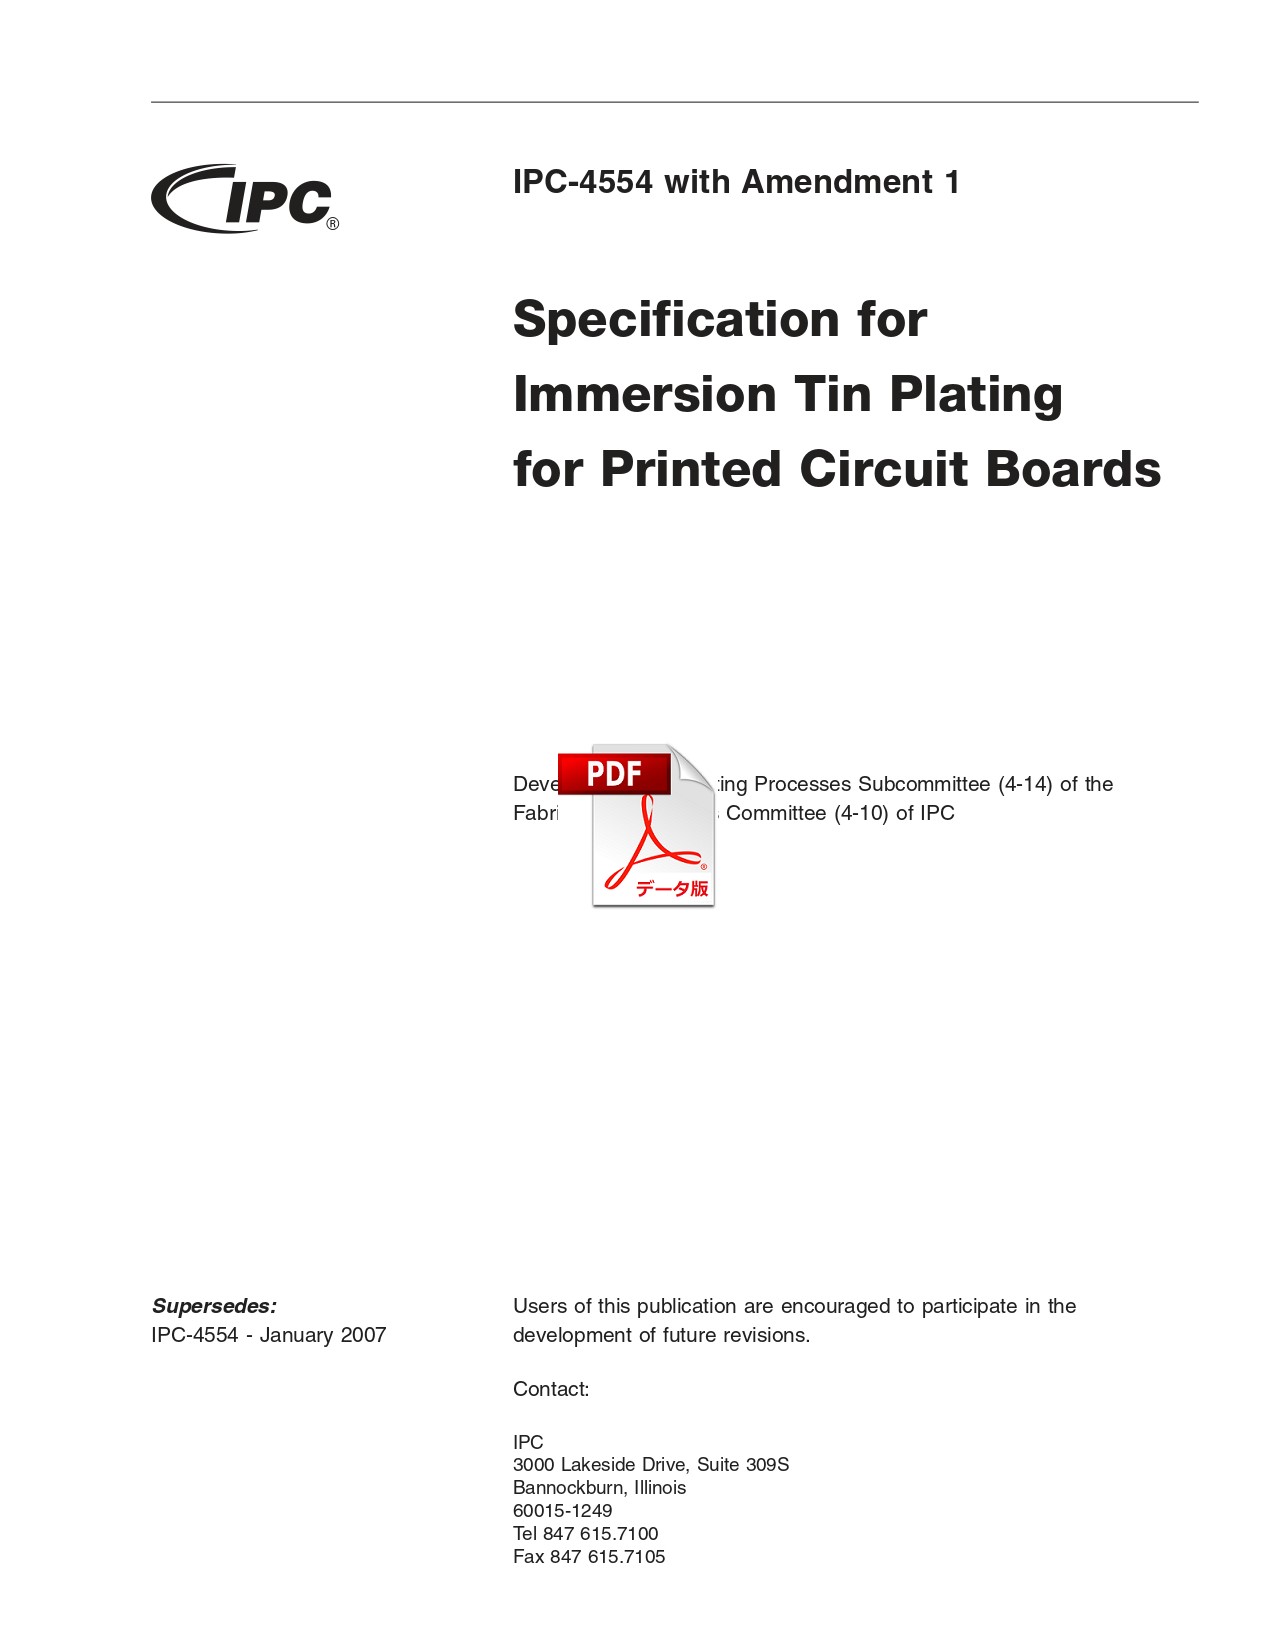 【英語版】IPC-4554 WAM1: Specification for Immersion Tin Plating for Printed Circuit Boards